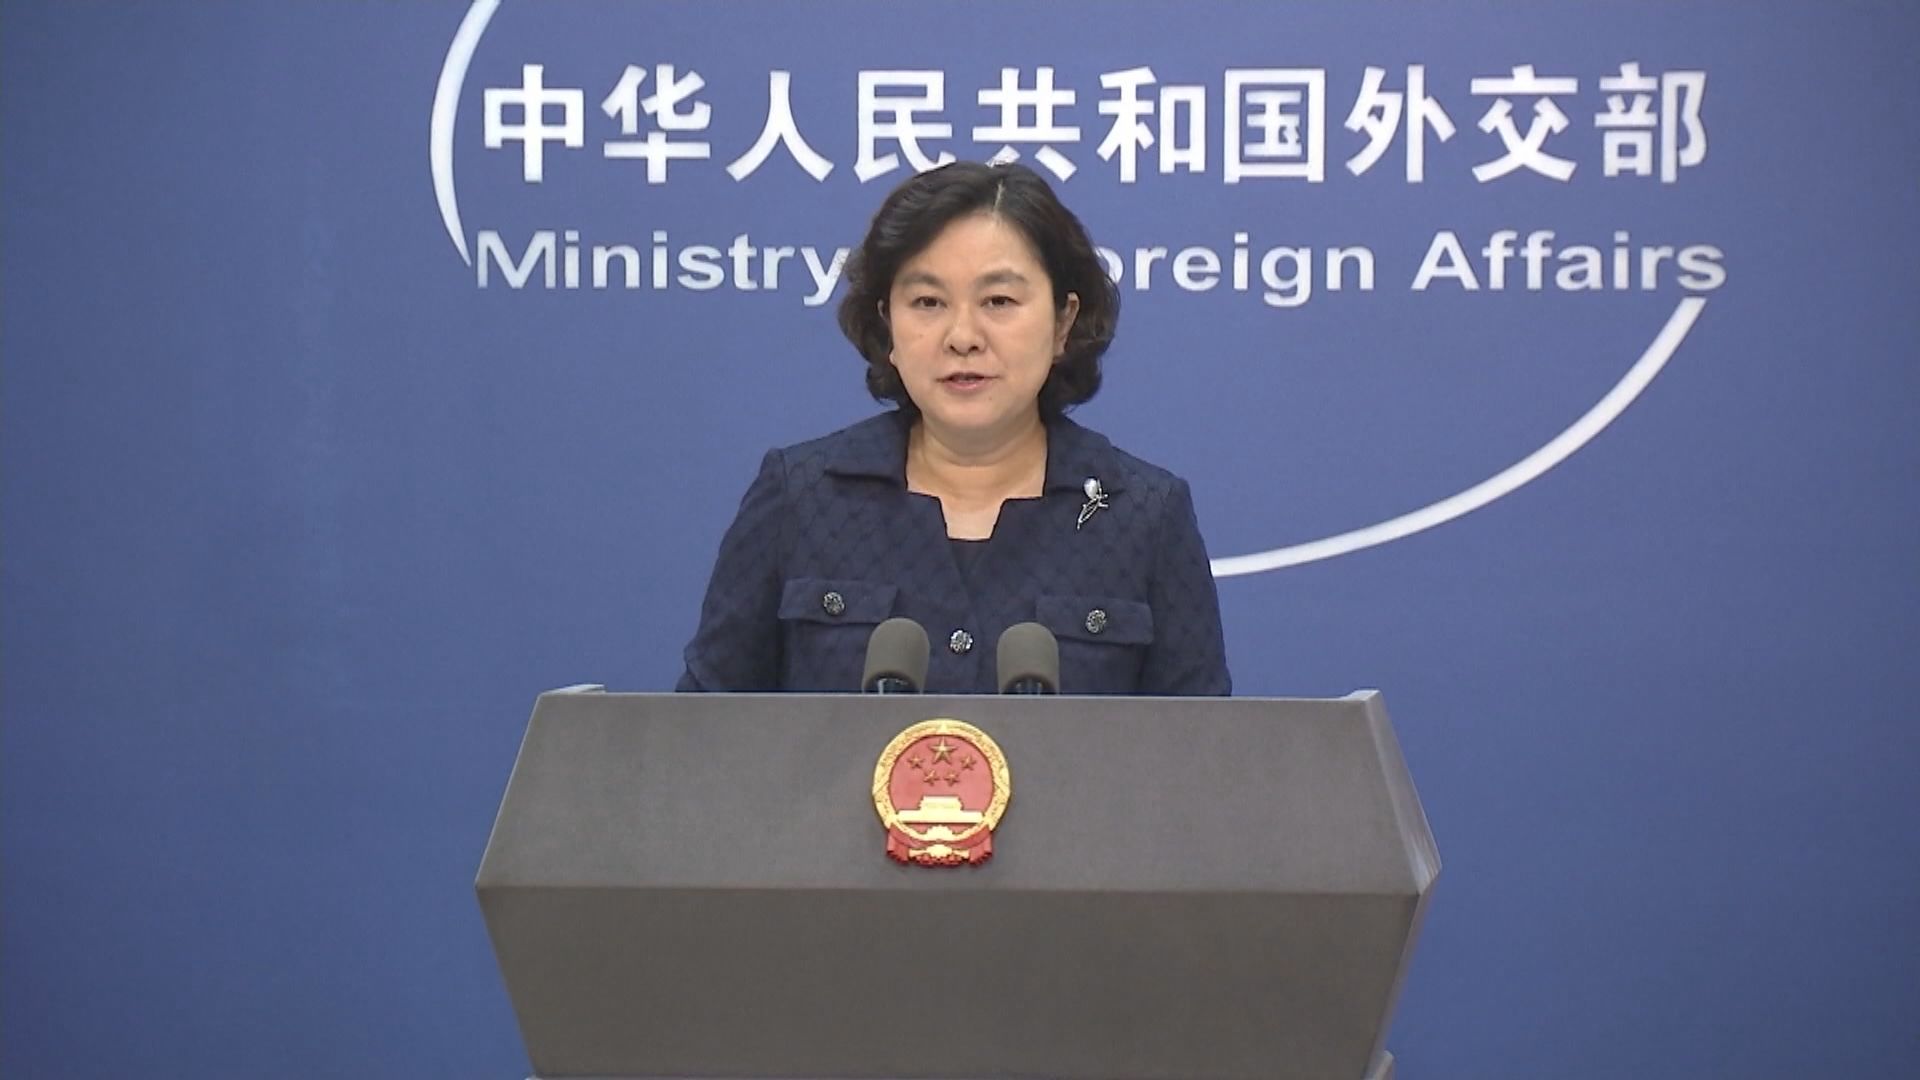 華春瑩獲任命為外交部副部長